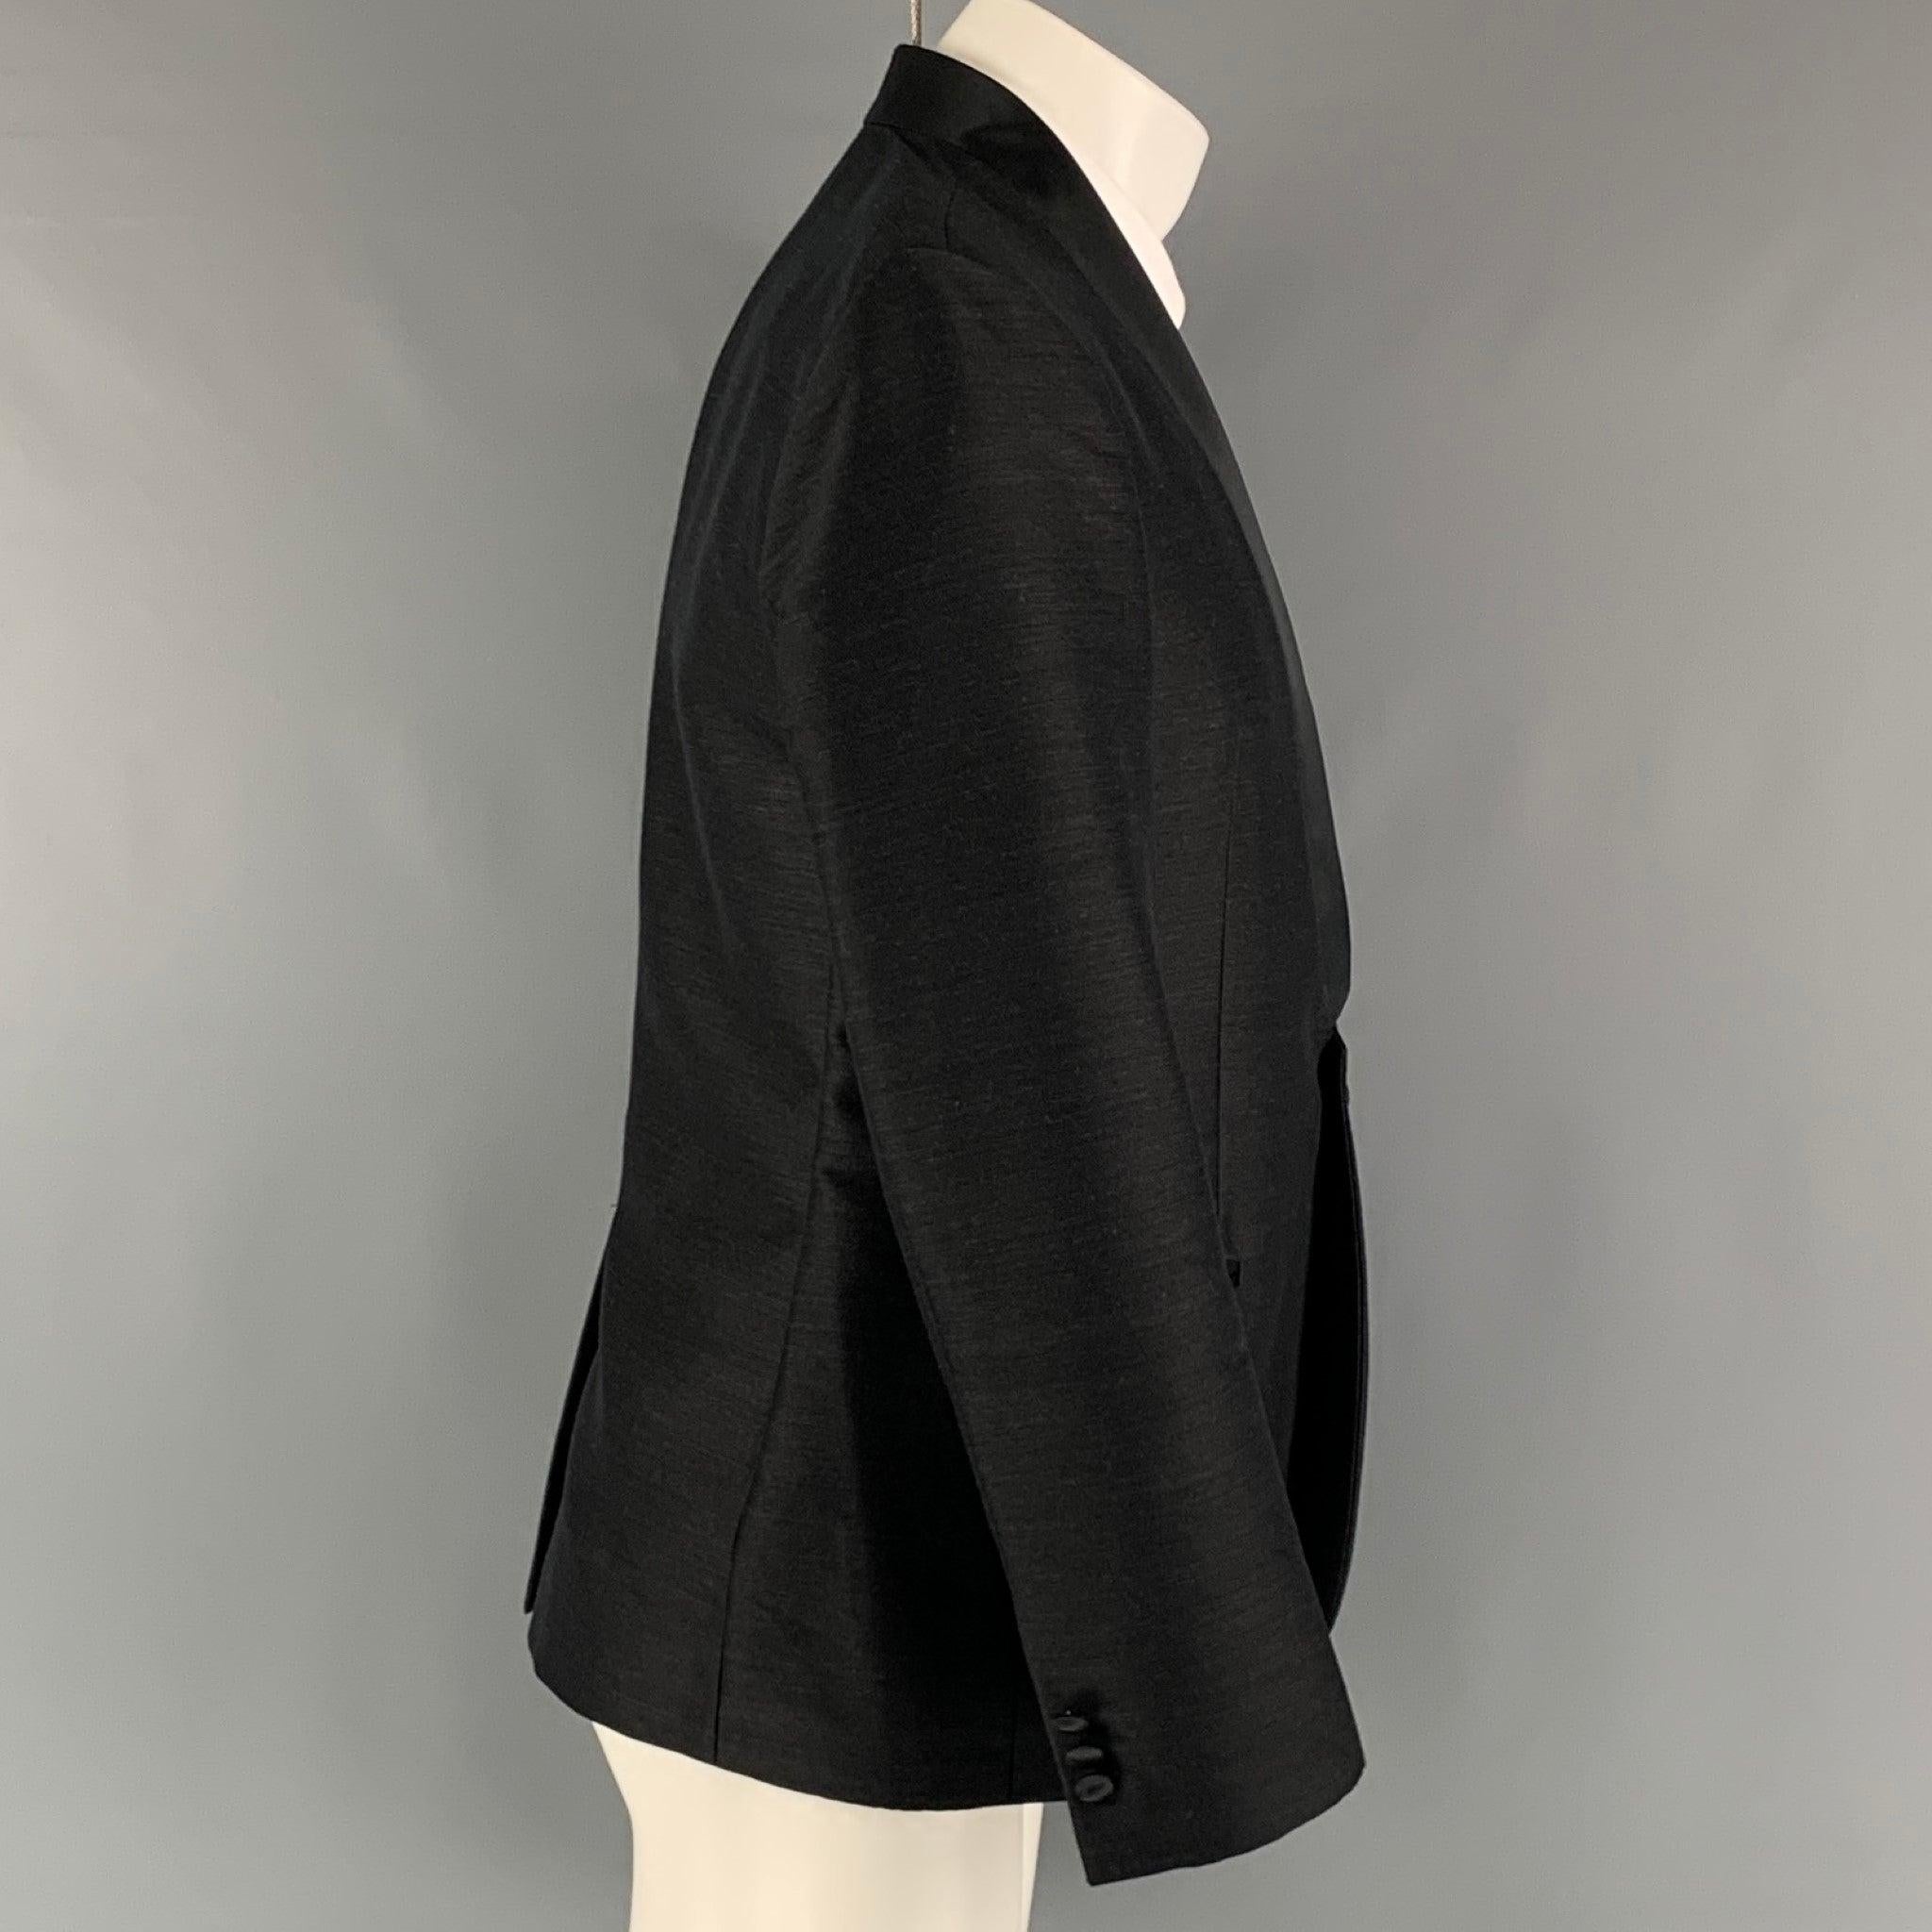 Le manteau sport 'Matt Line' d'EMPORIO ARMANI se compose d'une doublure intégrale en laine mélangée noire, d'un col châle, de poches passepoilées, d'une seule fente au dos et d'une fermeture à bouton unique. Fabriquées en Italie. Excellent état